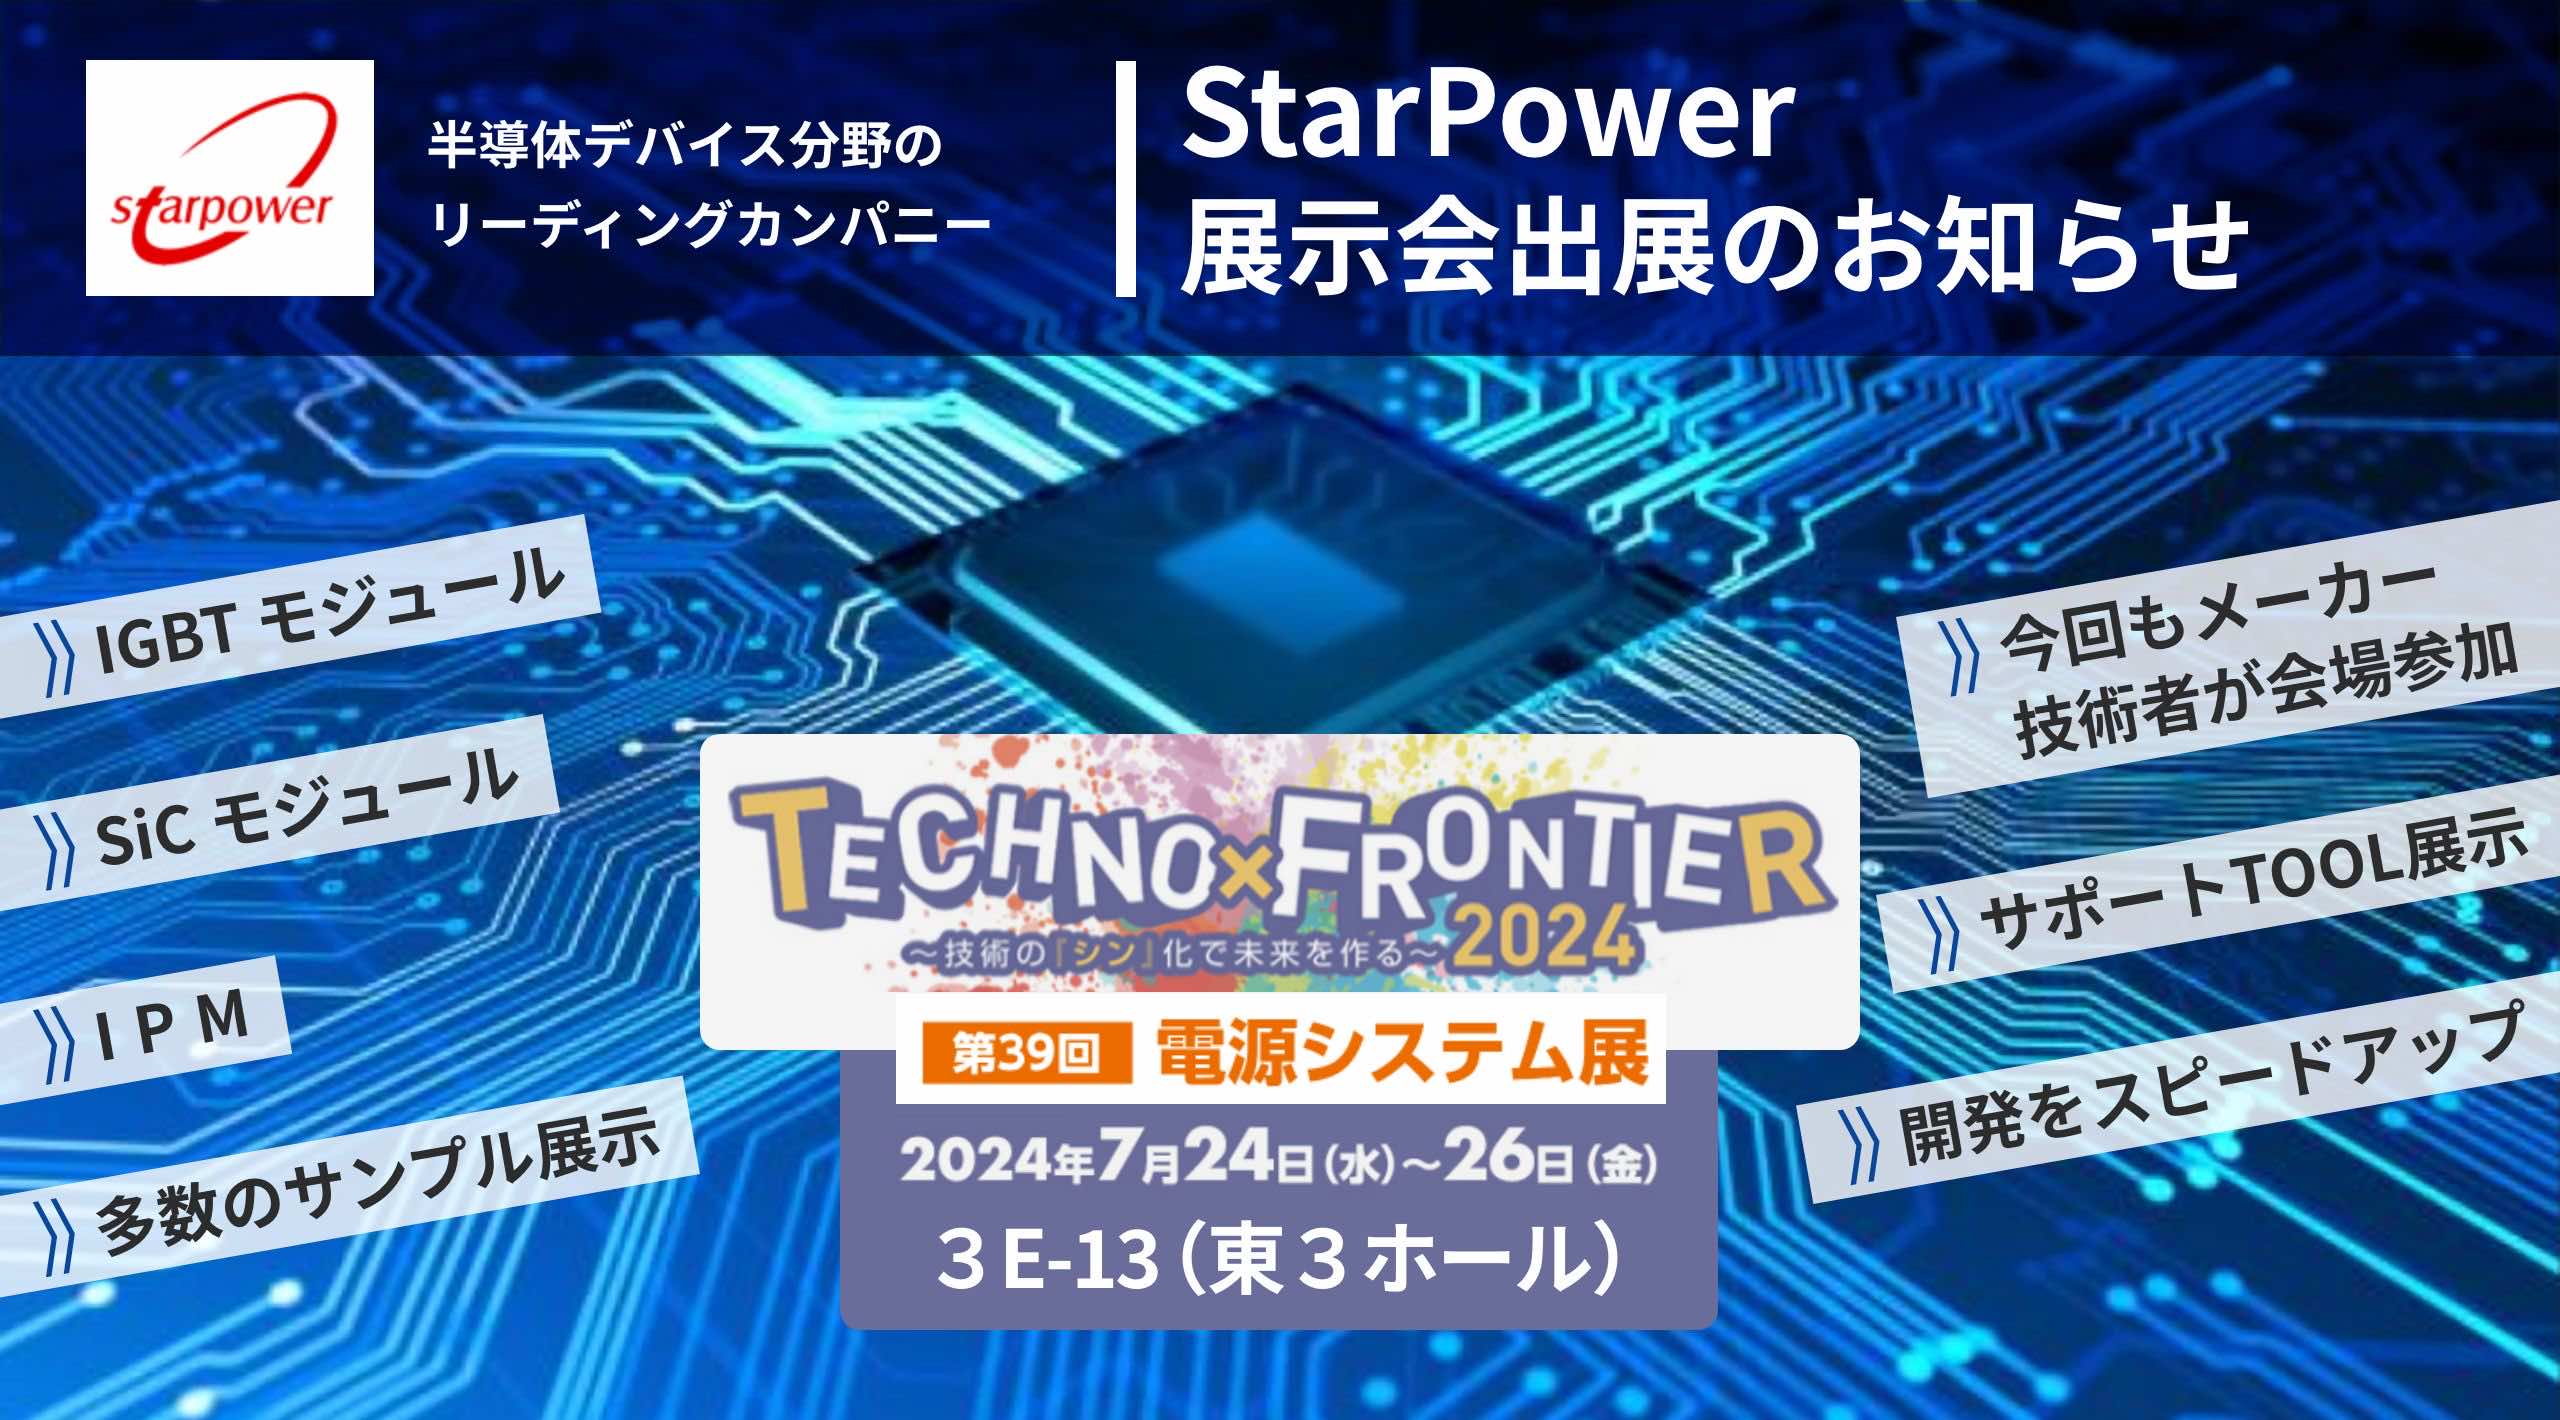 半導体デバイス分野のリーディングカンパニー StarPower 展示会出展のお知らせ